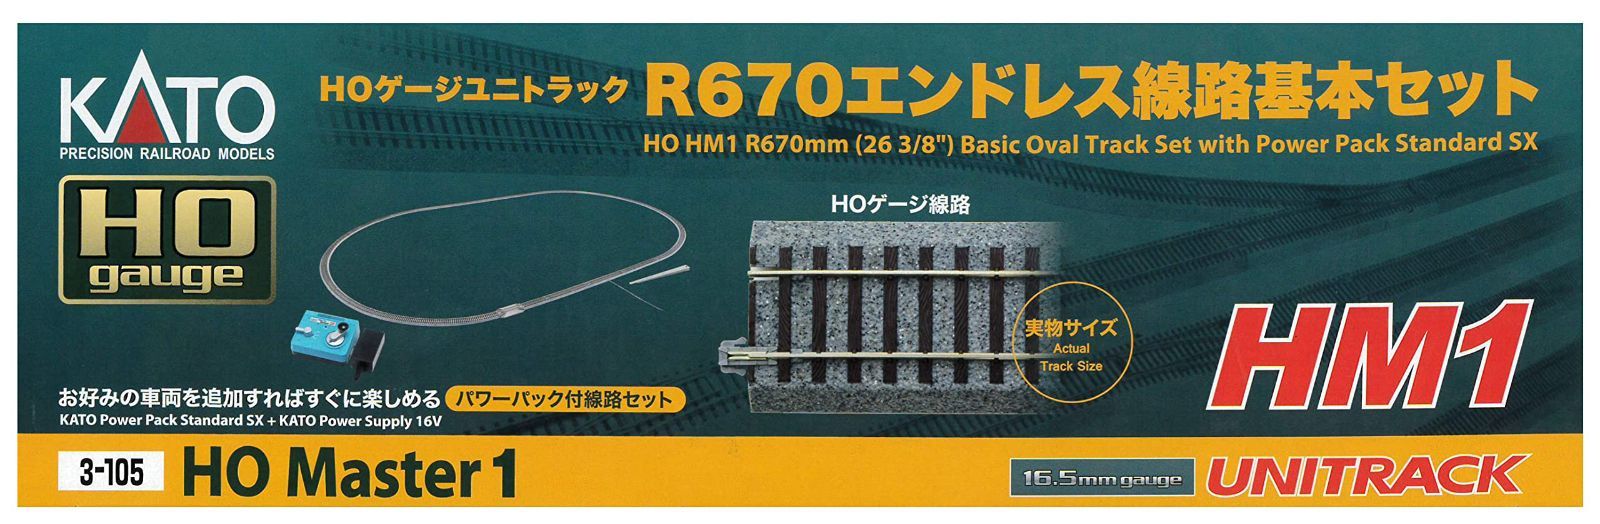 KATO HOゲージ ユニトラック R670エンドレス線路基本セット 3-105 